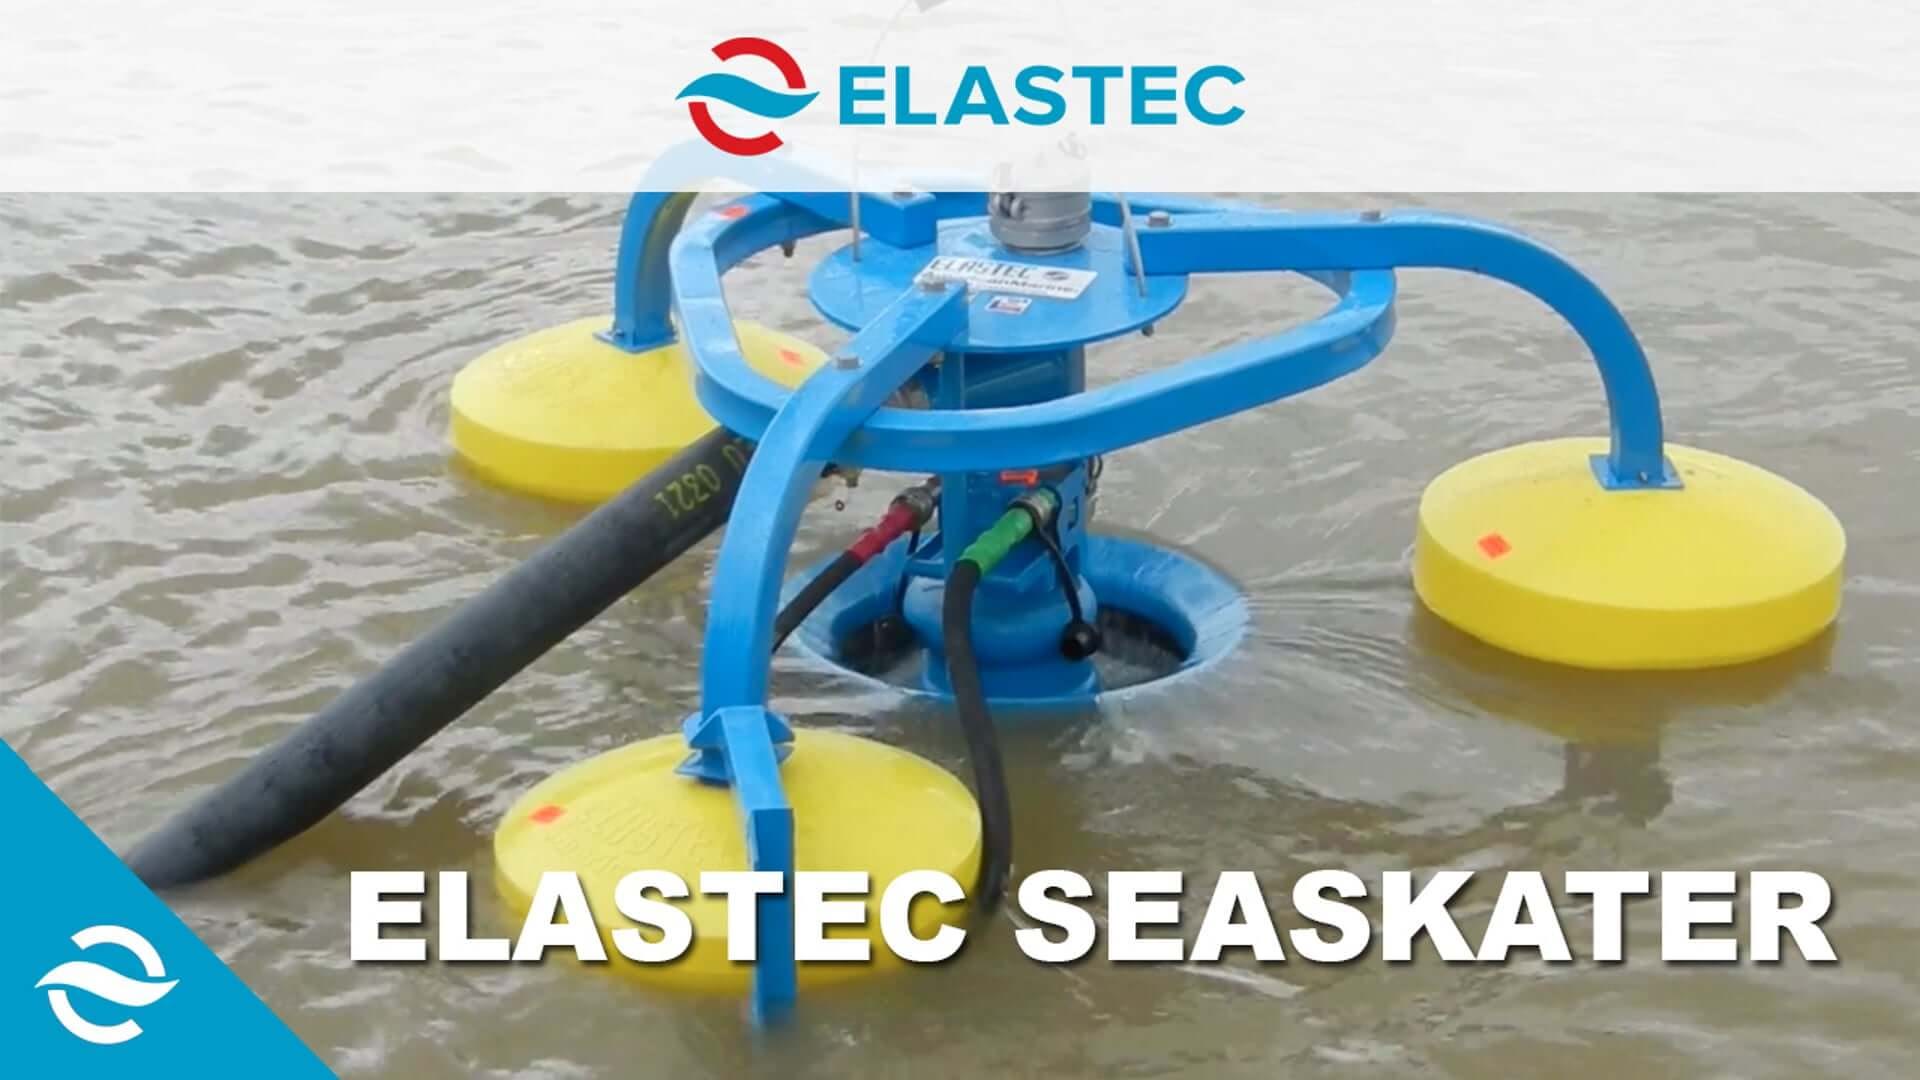 Elastec SeaSkater